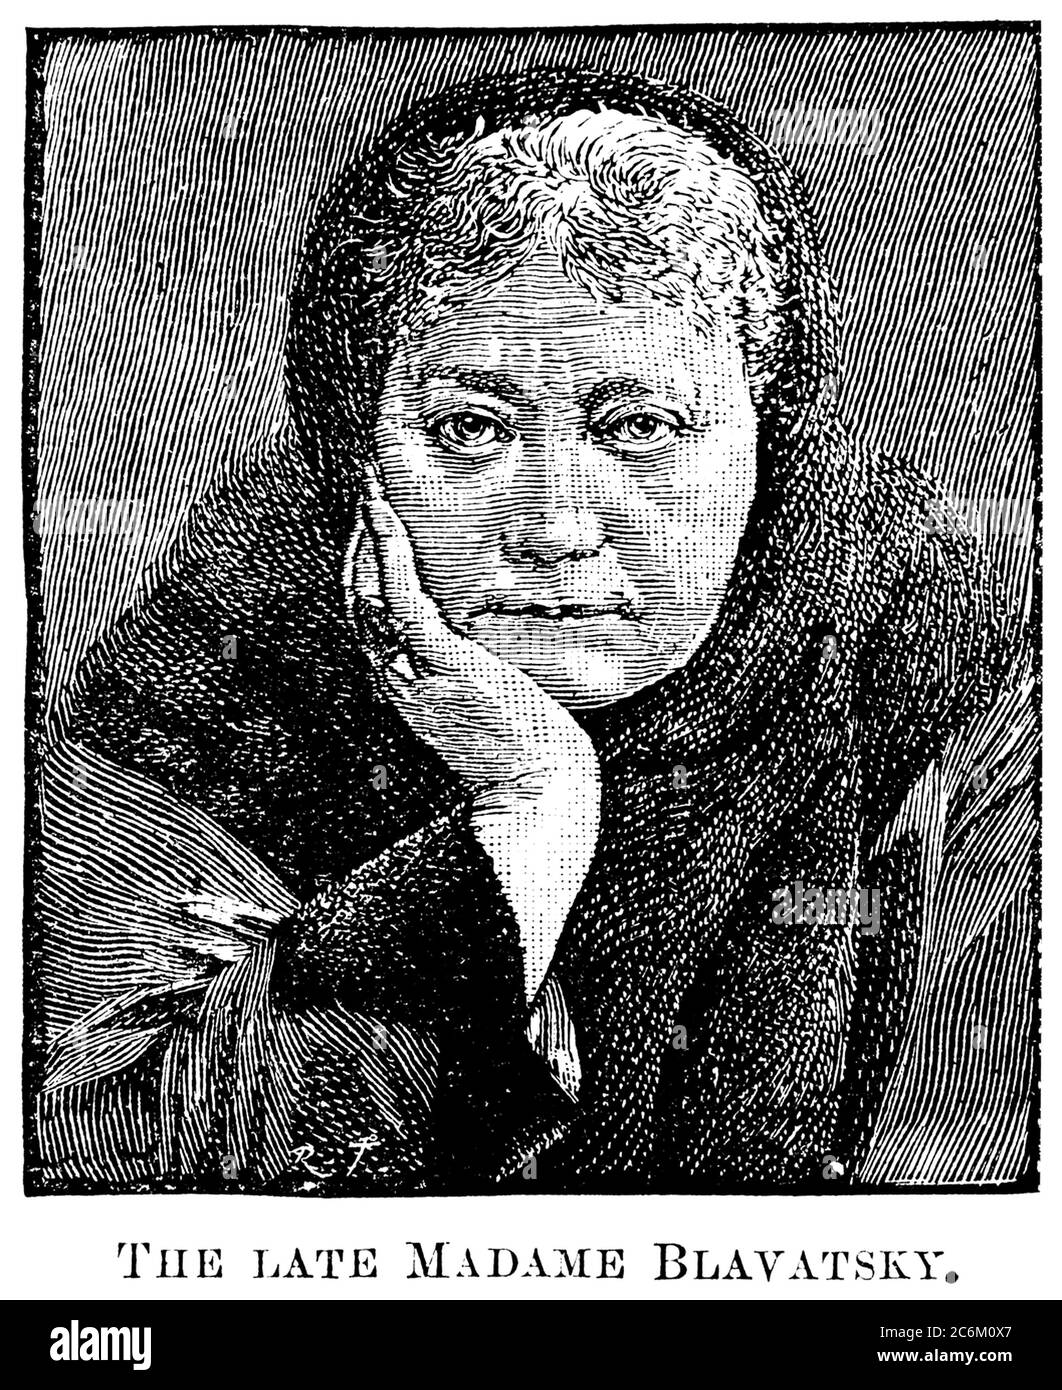 1890 c. , USA : The russian-born Madame Helena Petrovna BLAVATSKY von Hahn ( 1831 - 1891 ). Celebrated woman Theosopyst , phylosopher , occultist, mystic , spiritualist traveller and writer . Founder of THEOSOPHICAL SOCIETY in 1875 . - MEDIUM - Medianità - Sedute spiritiche - spiritualism - theosophy  - OCCULTISMO - OCCULTISTA - OCCULTO - scrittrice - SCRITTORE - LETTERATURA - LITERATURE - letterato - PARANORMALE -  TEOSOFIA - Teosofa -  THEOSOPHY - PHILOSOPHY - FILOSOFIA - FILOSOFA - PHILOSOPHER ESOTERISM - ESOTERICO - ESOTERISMO - ESOTERIC - engraving - incisione - illustrazione - illustrati Stock Photo